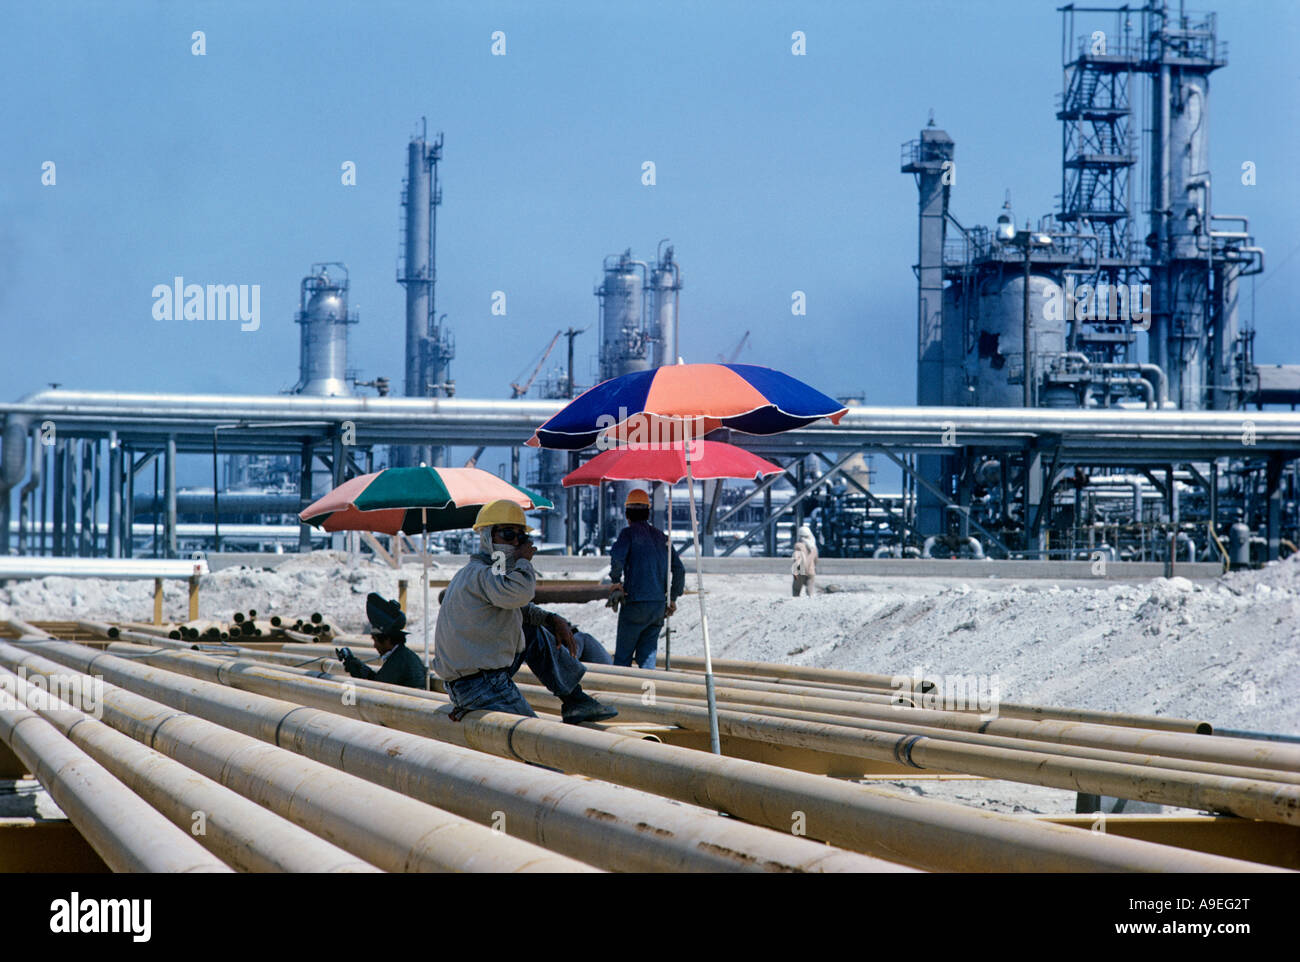 Arabia Saudita.Ras Tanura, Refinería de Petróleo.coreanos trabajan en tubos en HQ de Arabia Aramcothe American co, establezca upby ofKing Abdul Aziz 1938 Foto de stock